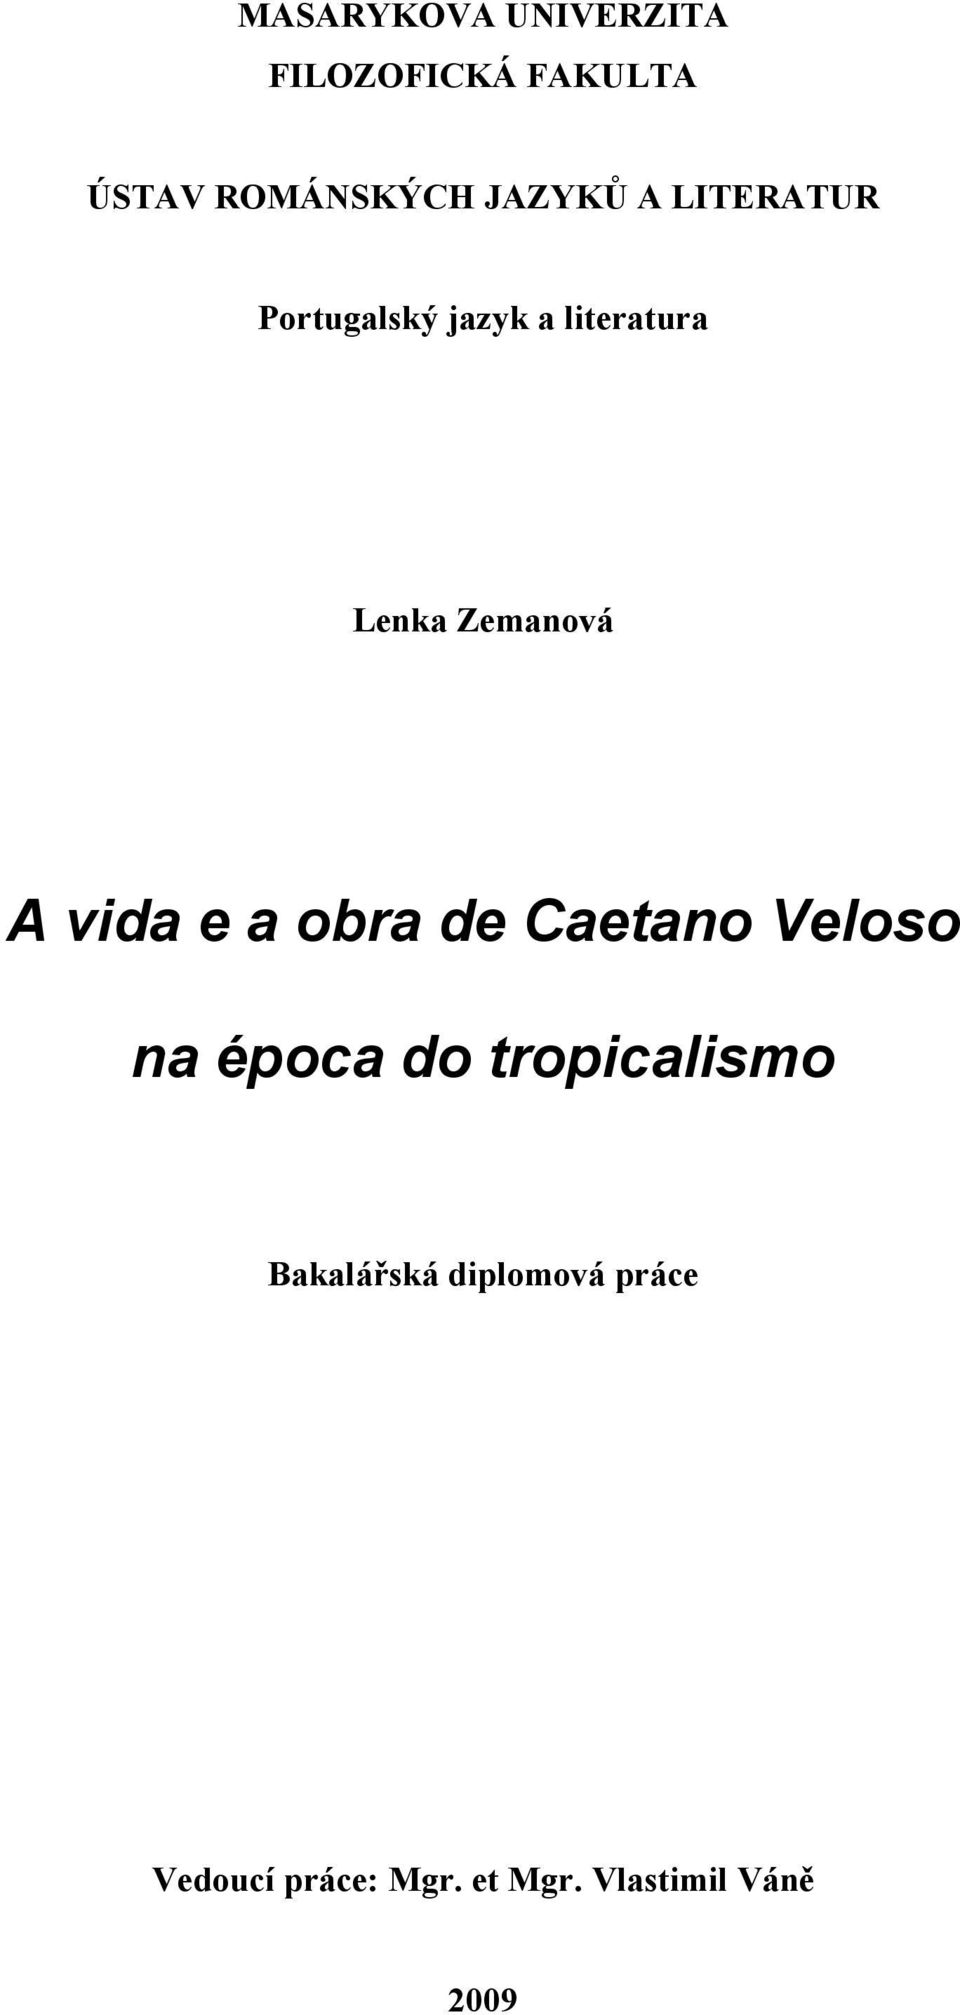 A vida e a obra de Caetano Veloso na época do tropicalismo